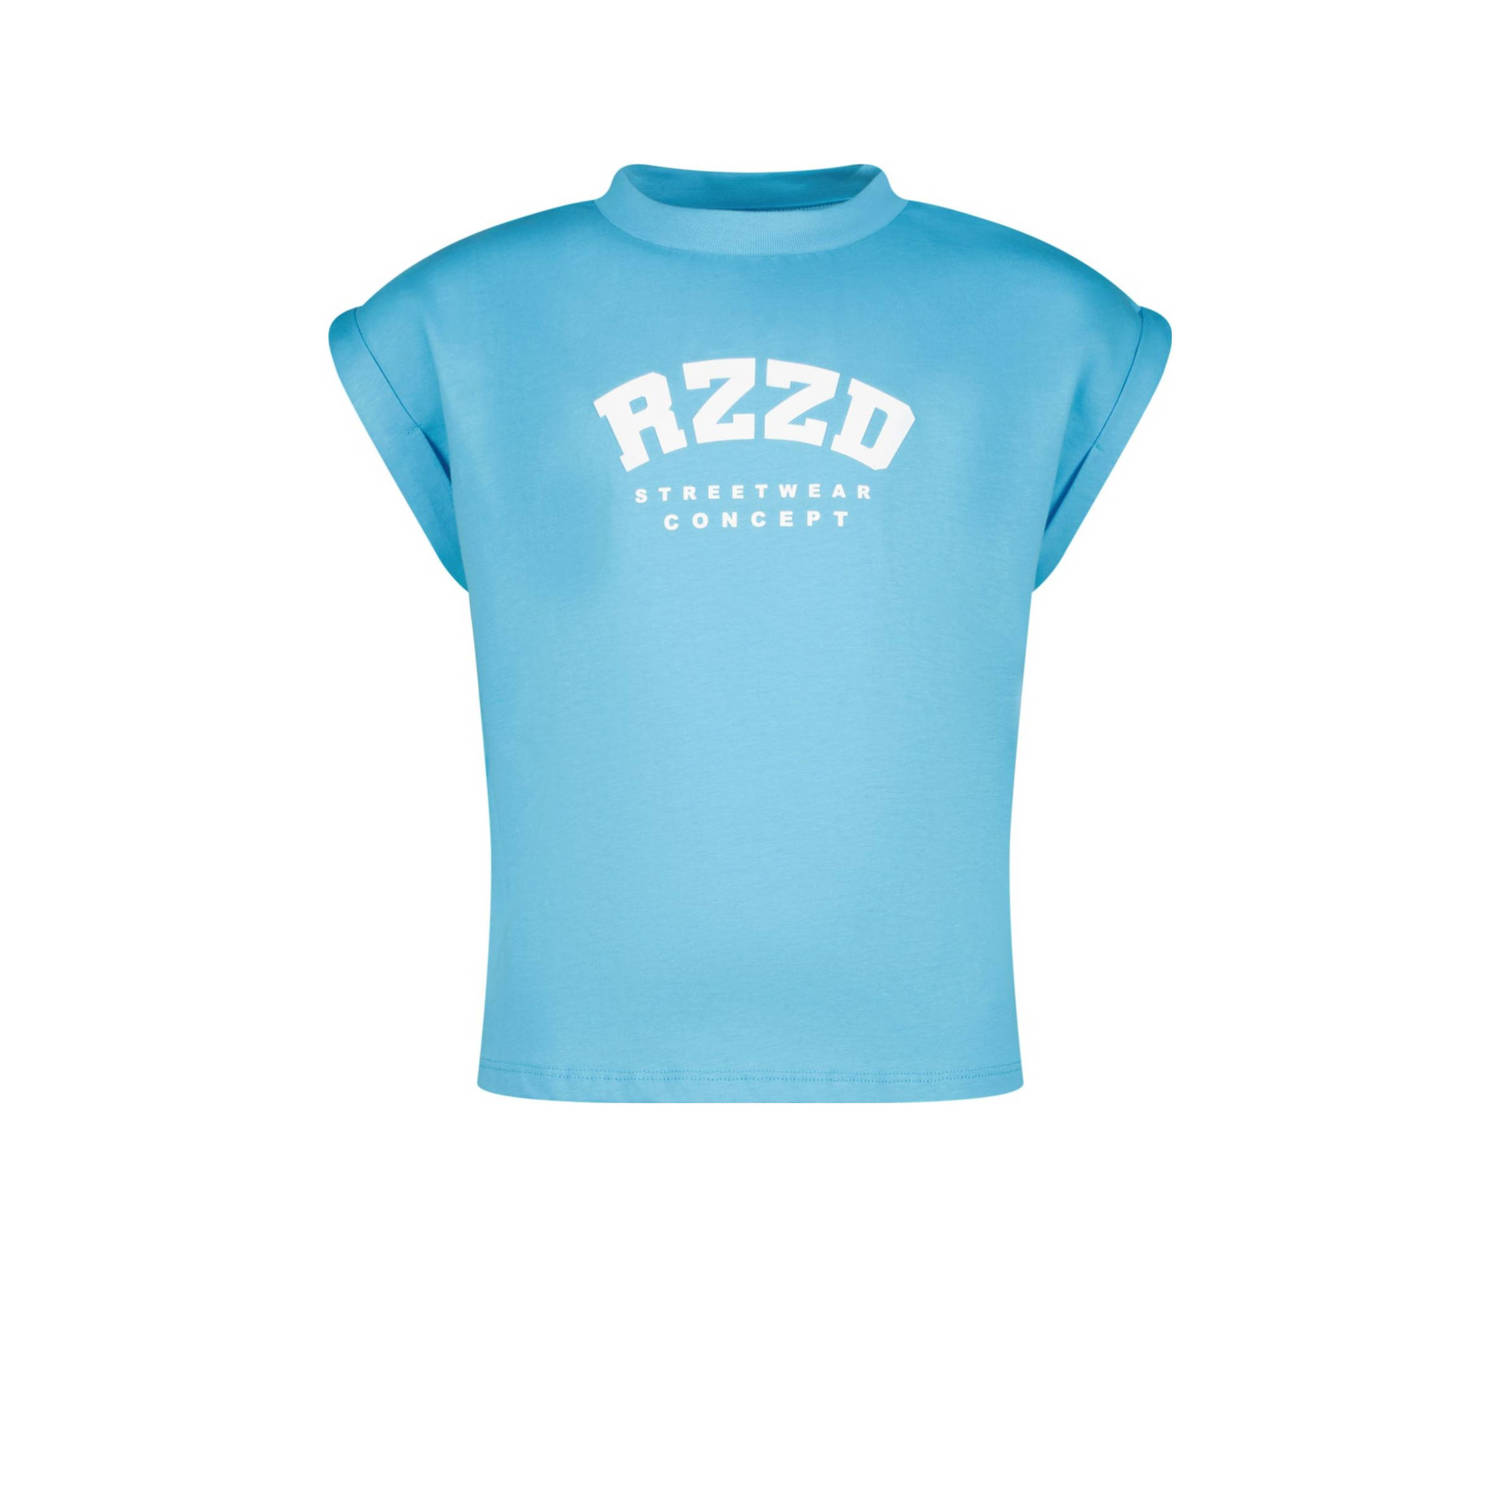 Raizzed T-shirt Merena met logo helderblauw